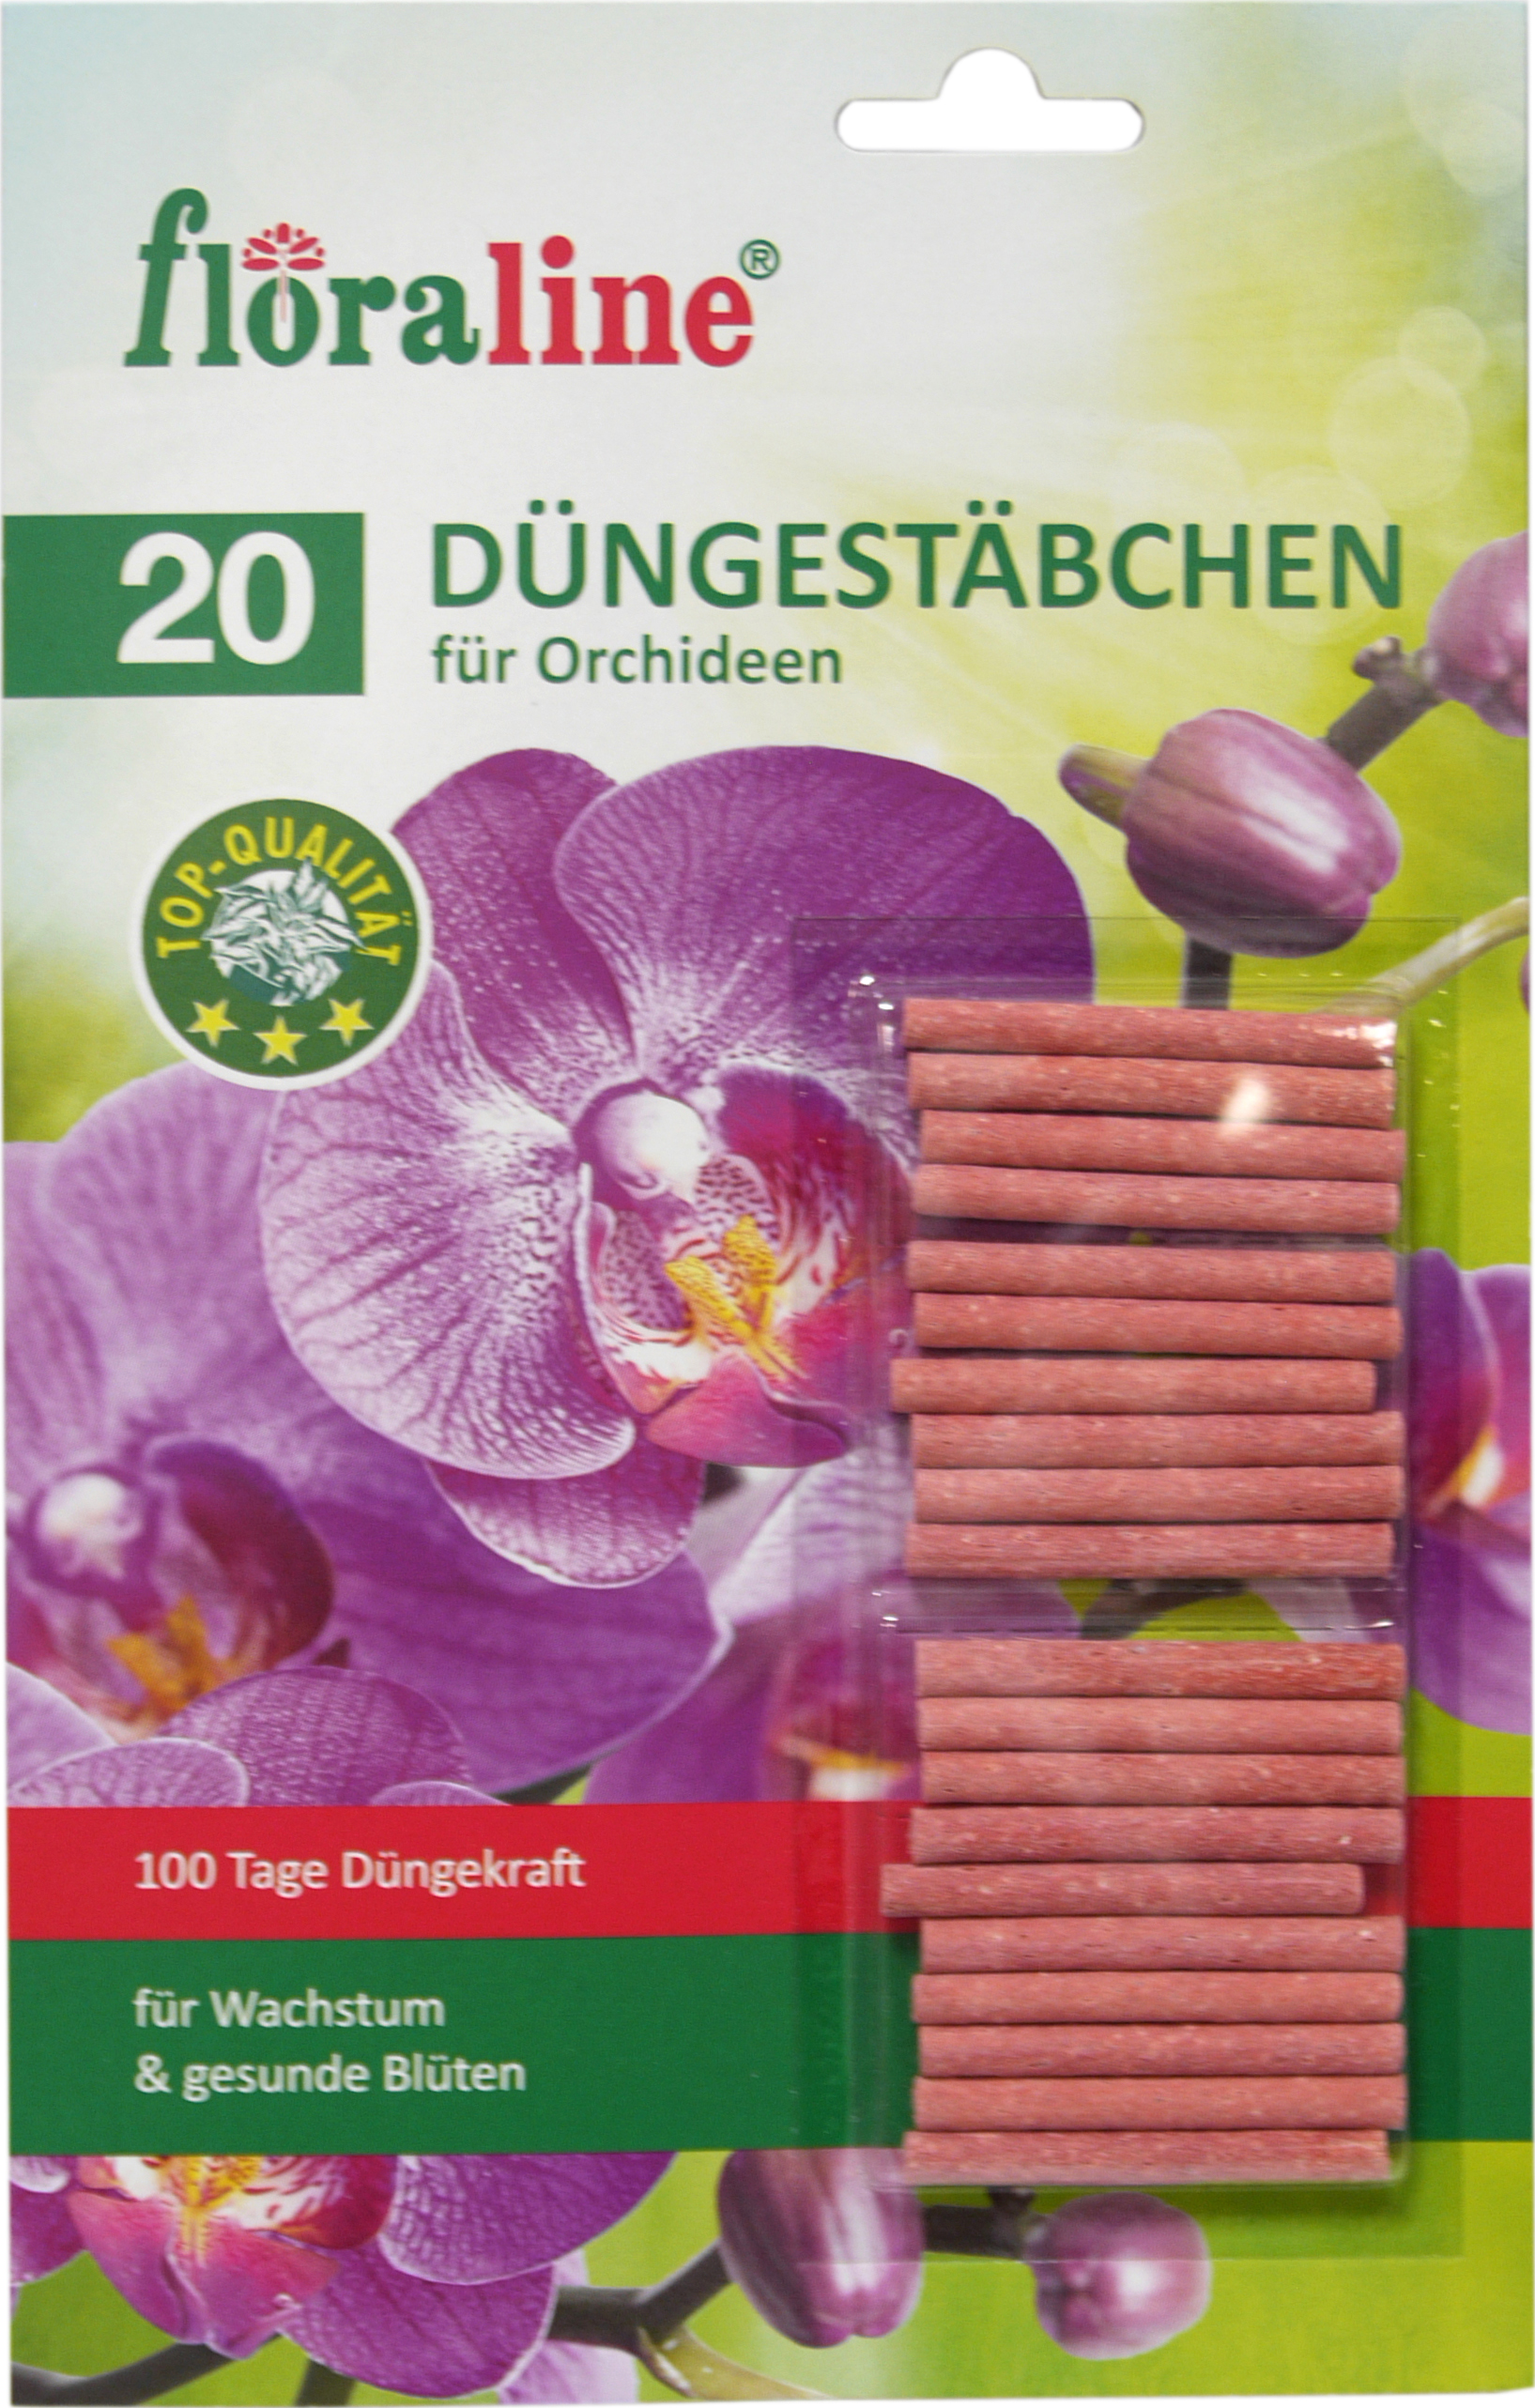 02206 - Düngestäbchen für Orchideen 20er 